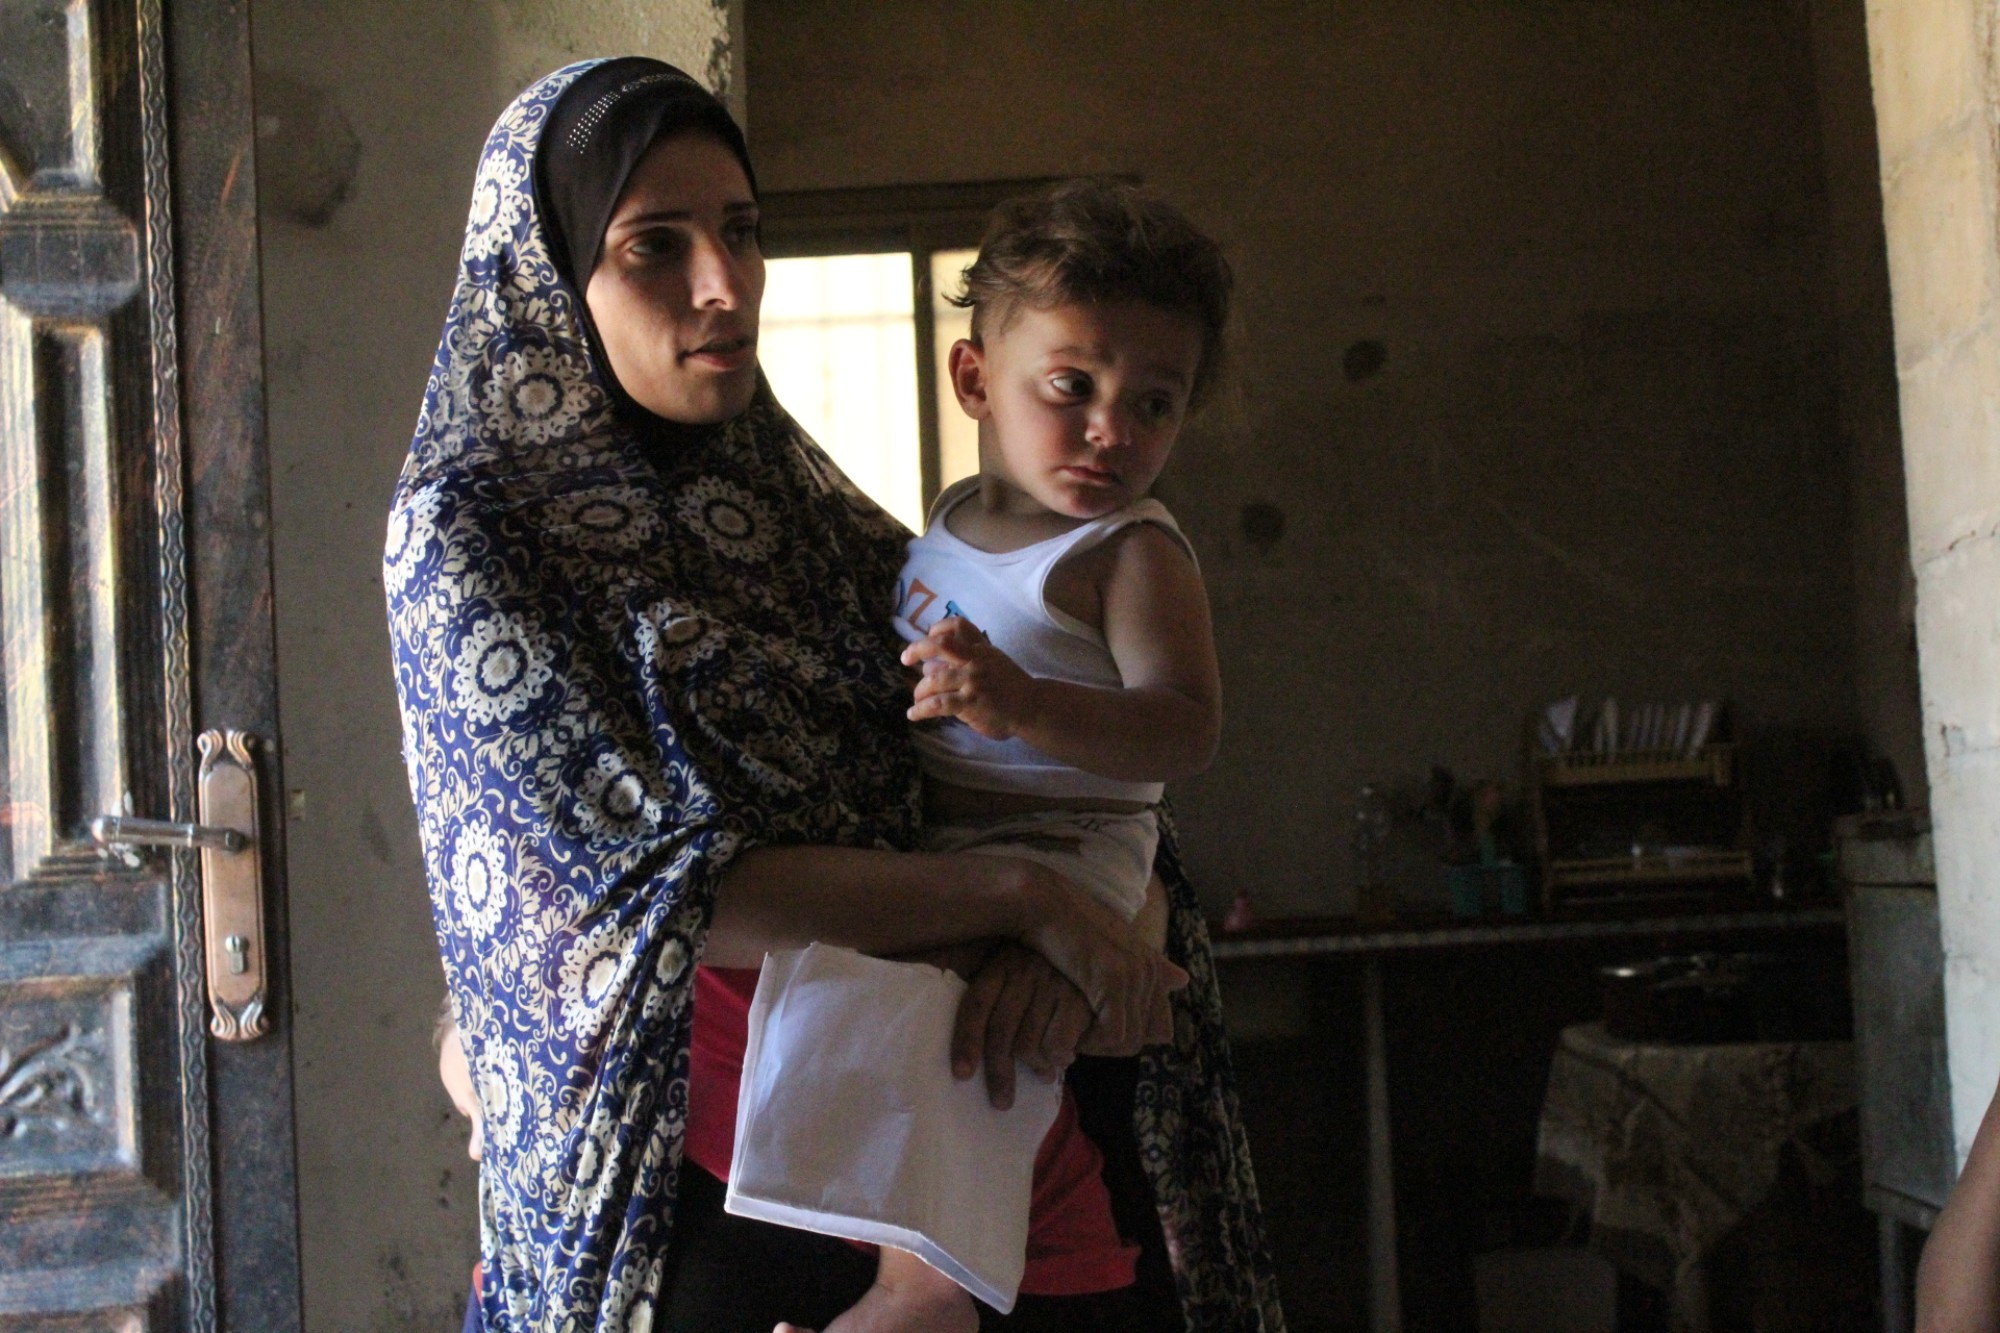 Maye Barakat tient dans ses bras son fils d’un an et demi, qui a des problèmes respiratoires, et ses papiers médicaux (MEE/Megan Giovannetti)